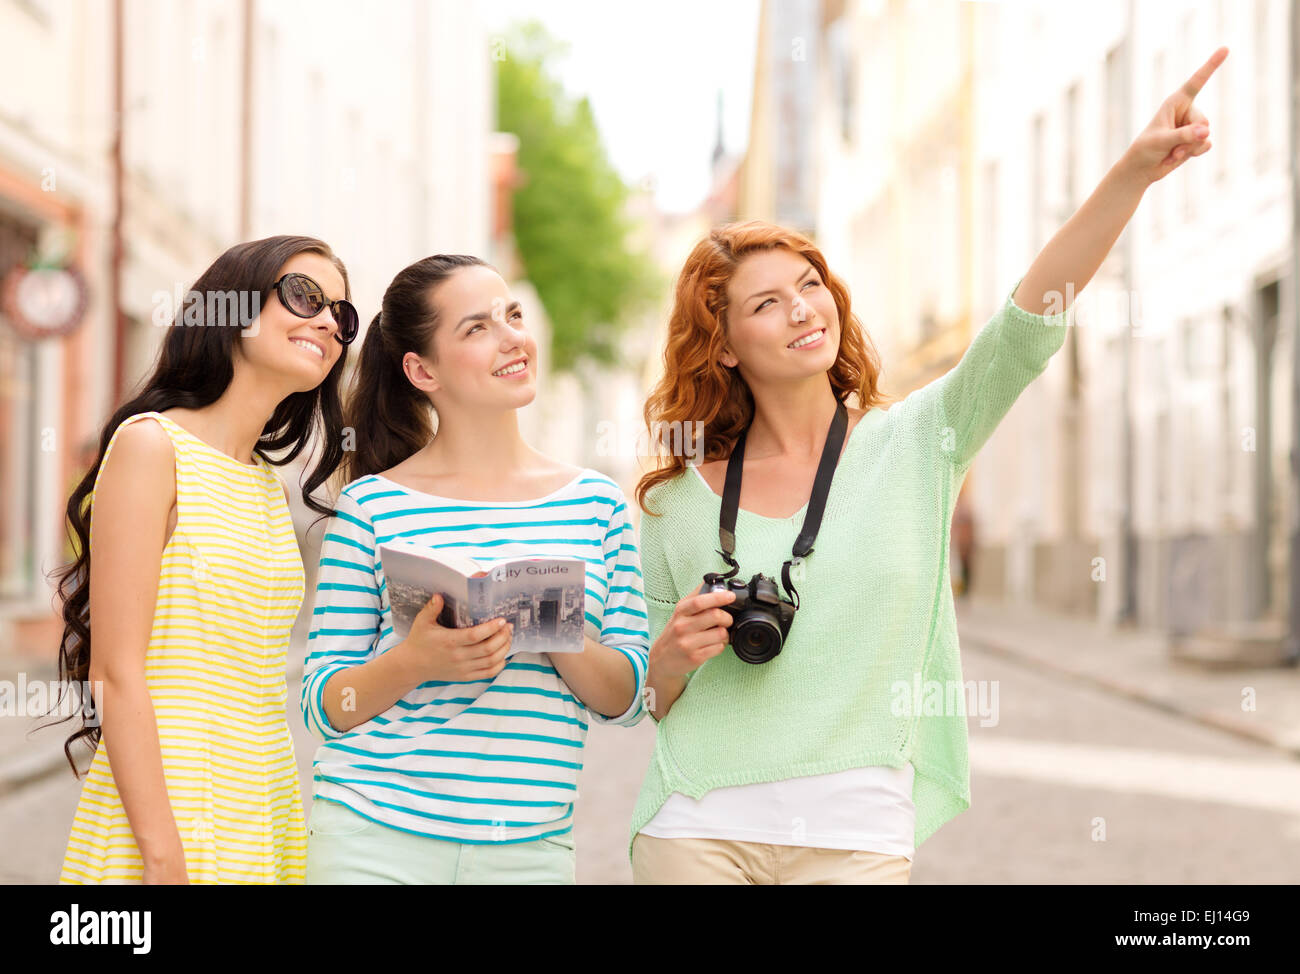 Smiling teenage girls avec guide de la ville et de l'appareil photo Banque D'Images